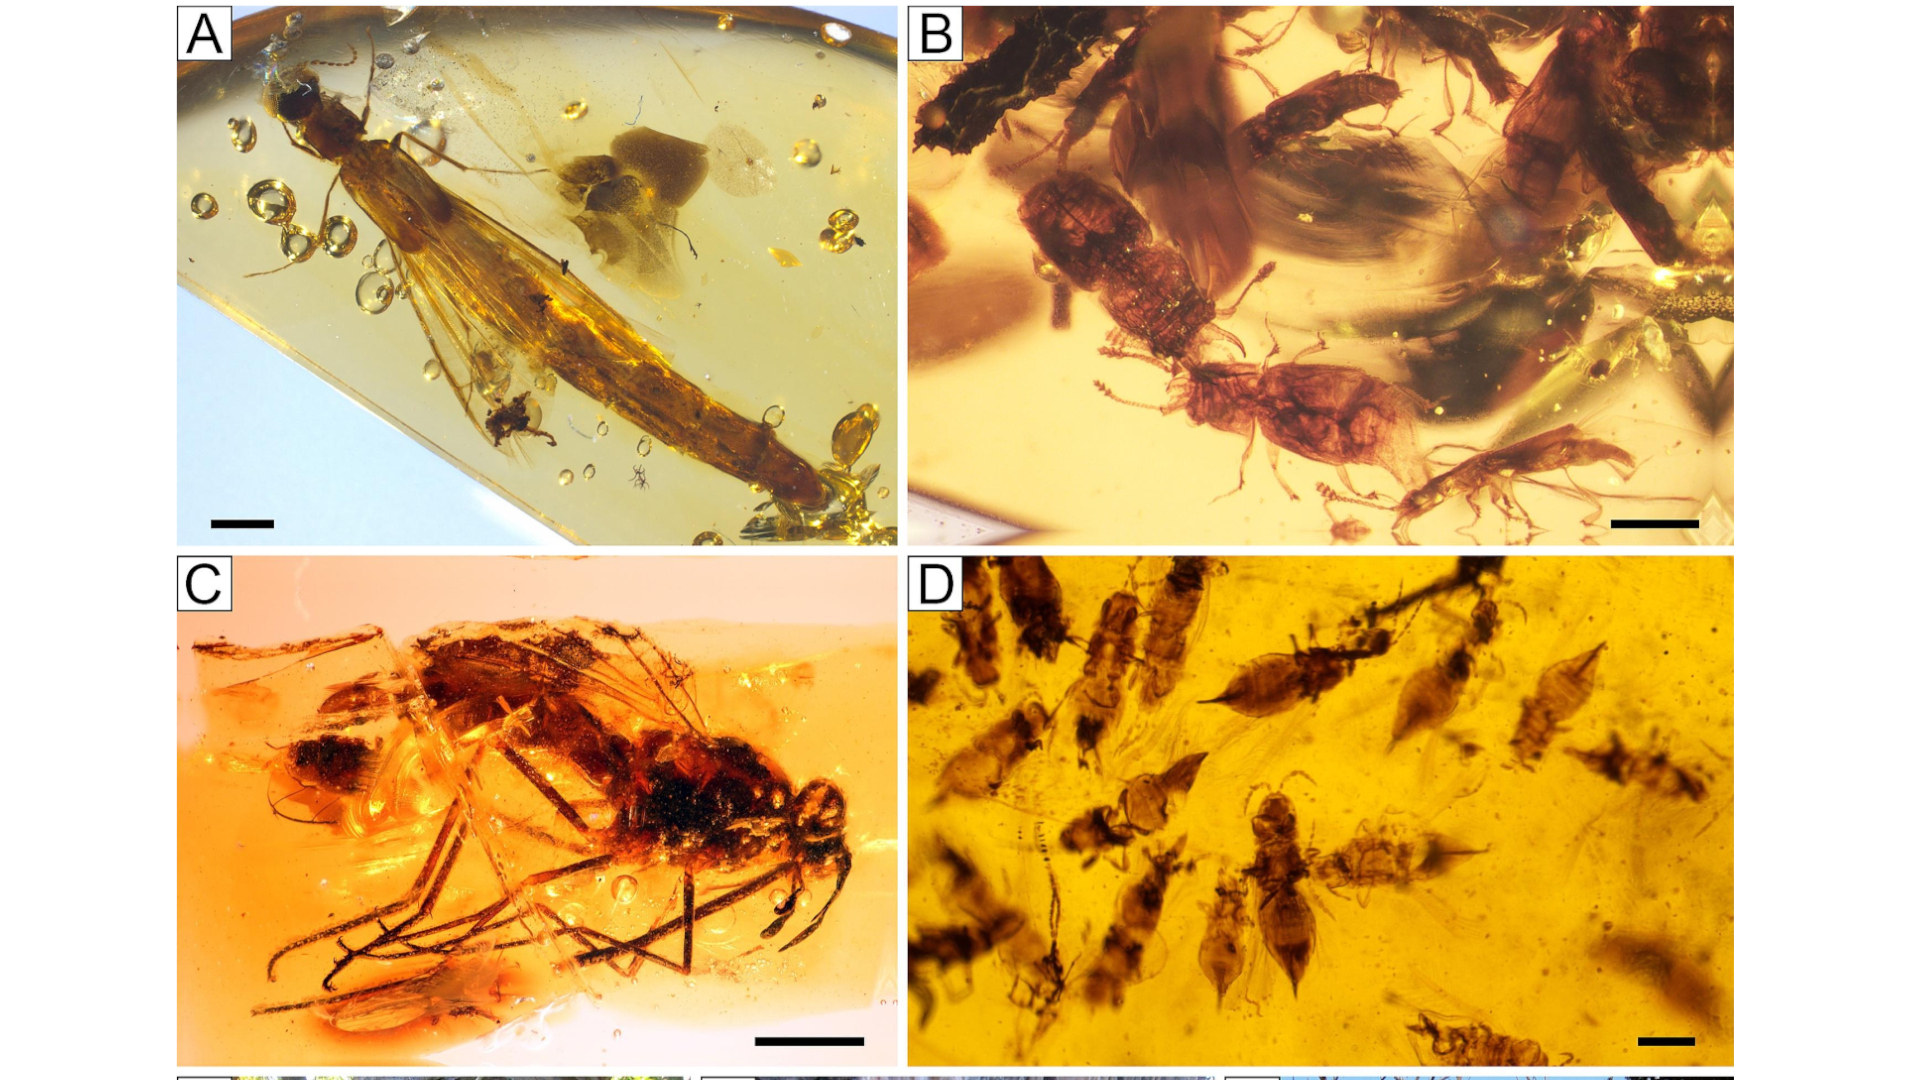 Cuatro imágenes de diferentes insectos encontrados en ámbar.